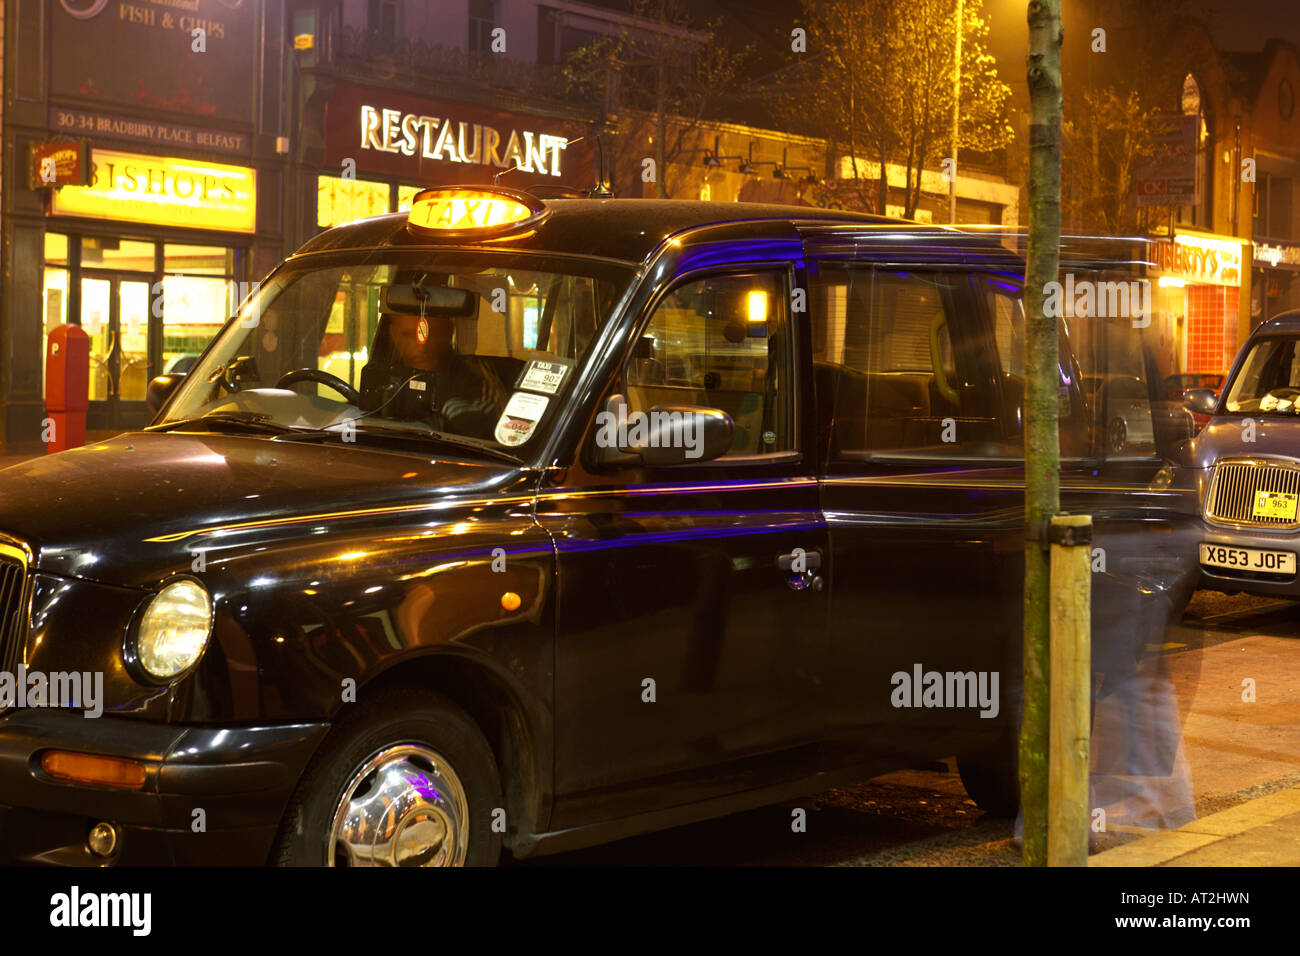 Macho de embarque de pasajeros en un taxi cab rank en la zona de vida nocturna de bares y discotecas en bradbury lugar belfast Foto de stock